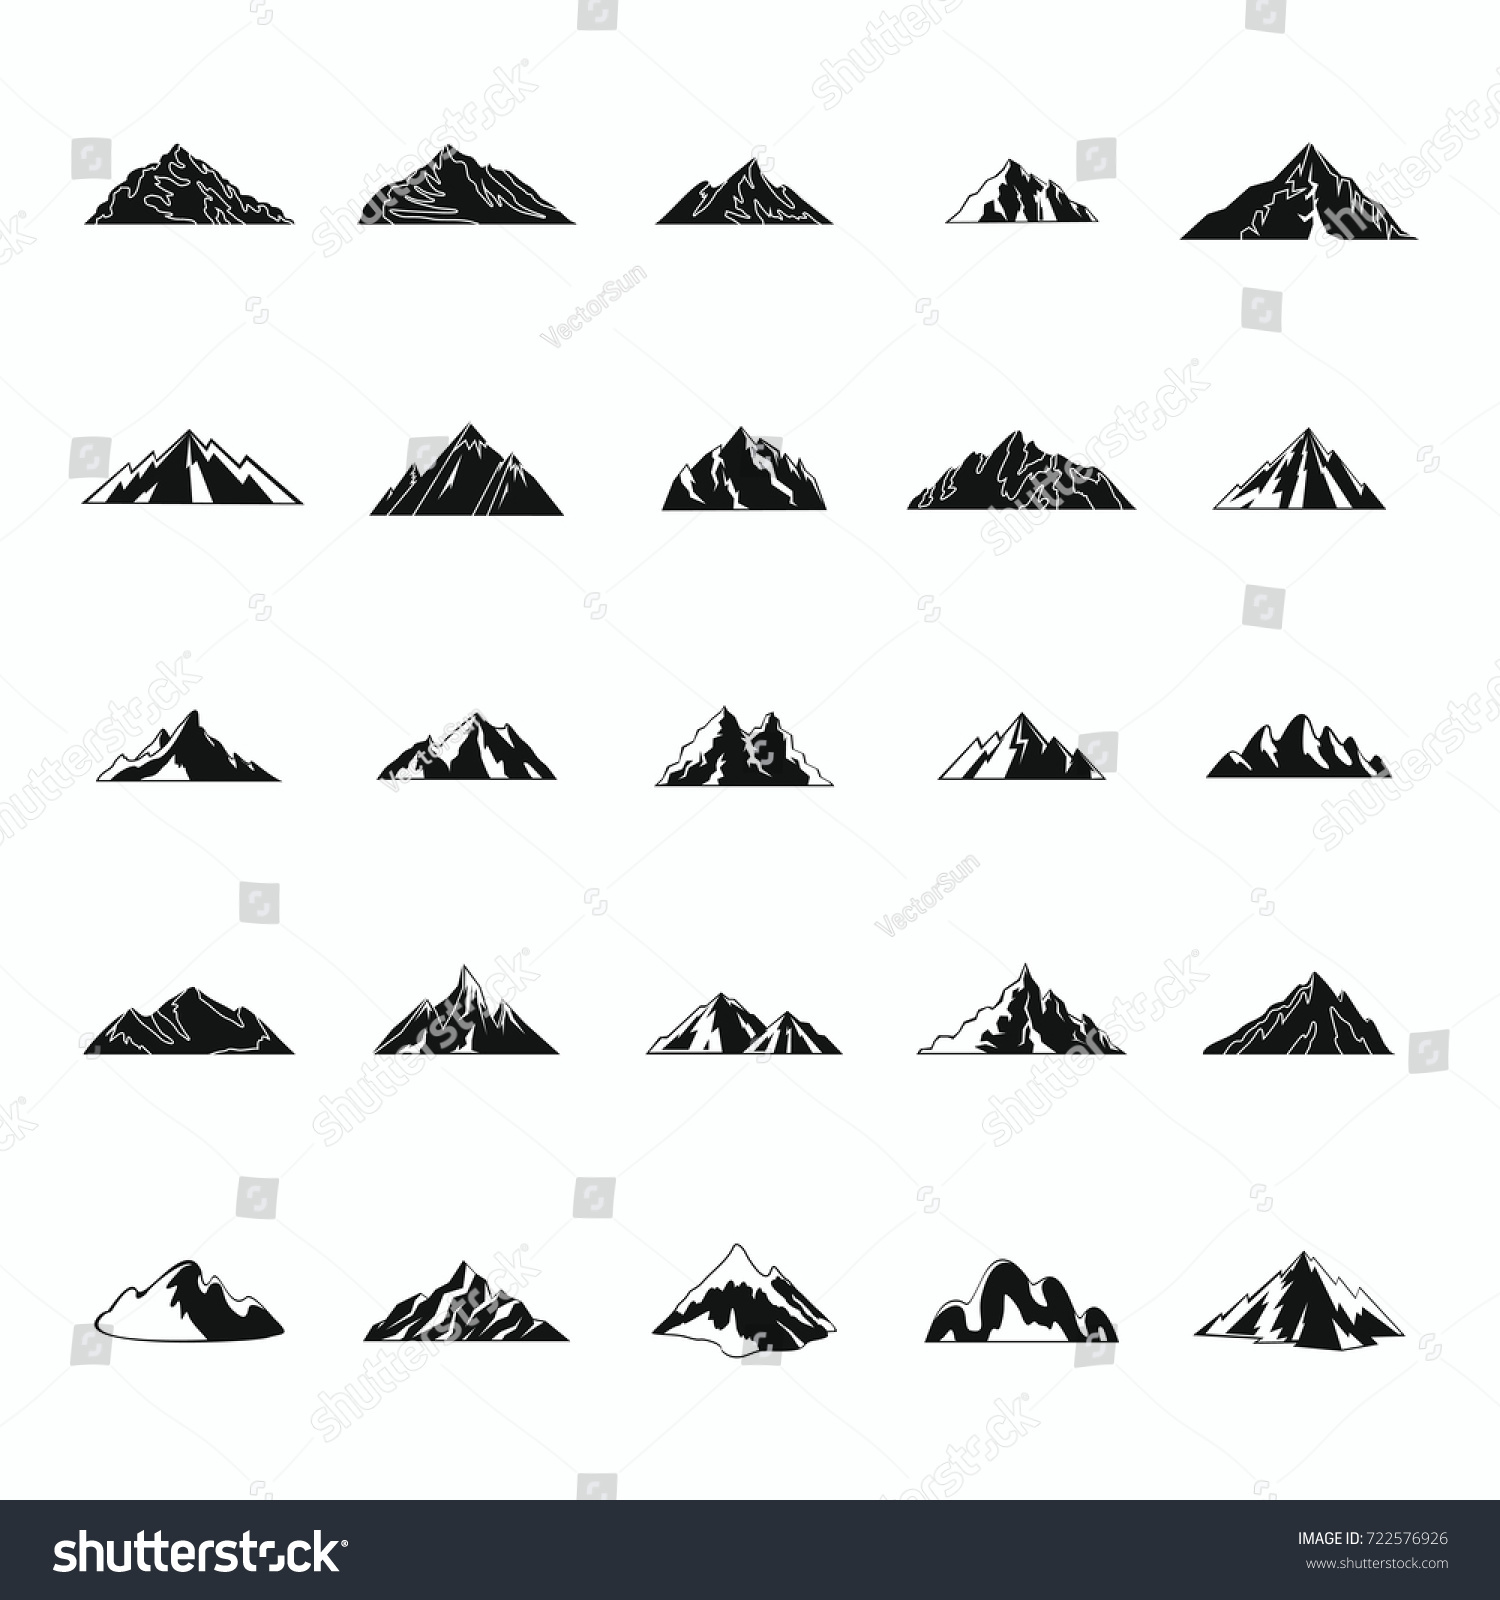 Mountain Black Silhouette Icons Set Vector Stock Vector 722576926 ...